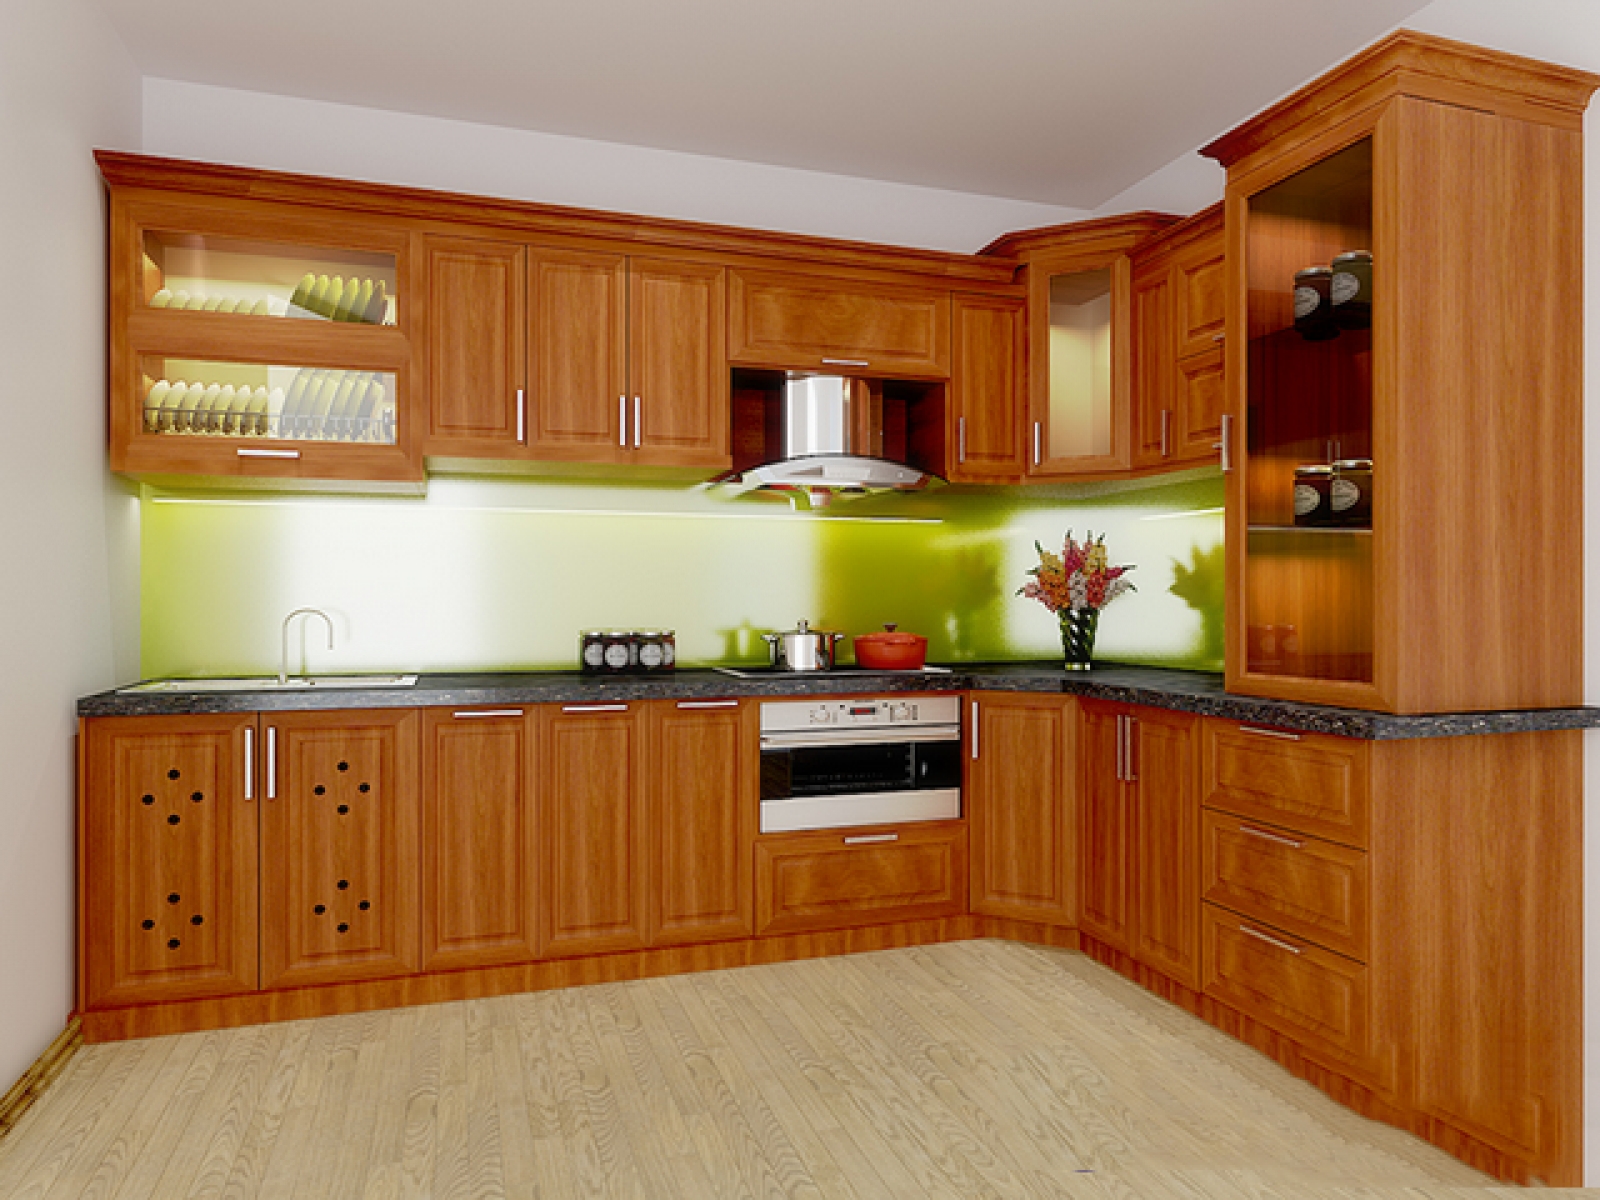 Tủ bếp gỗ xoan đào màu nâu góc chữ L sẽ đem đến cho không gian bếp của bạn sự sang trọng, hiện đại, và độc đáo. Với kích thước phù hợp, tủ góc chữ L sẽ giúp bạn tối ưu hóa không gian của mình mà vẫn đảm bảo không gian cho bạn và những người thân. Hãy xem những hình ảnh liên quan đến tủ bếp này và cảm nhận sự khác biệt!